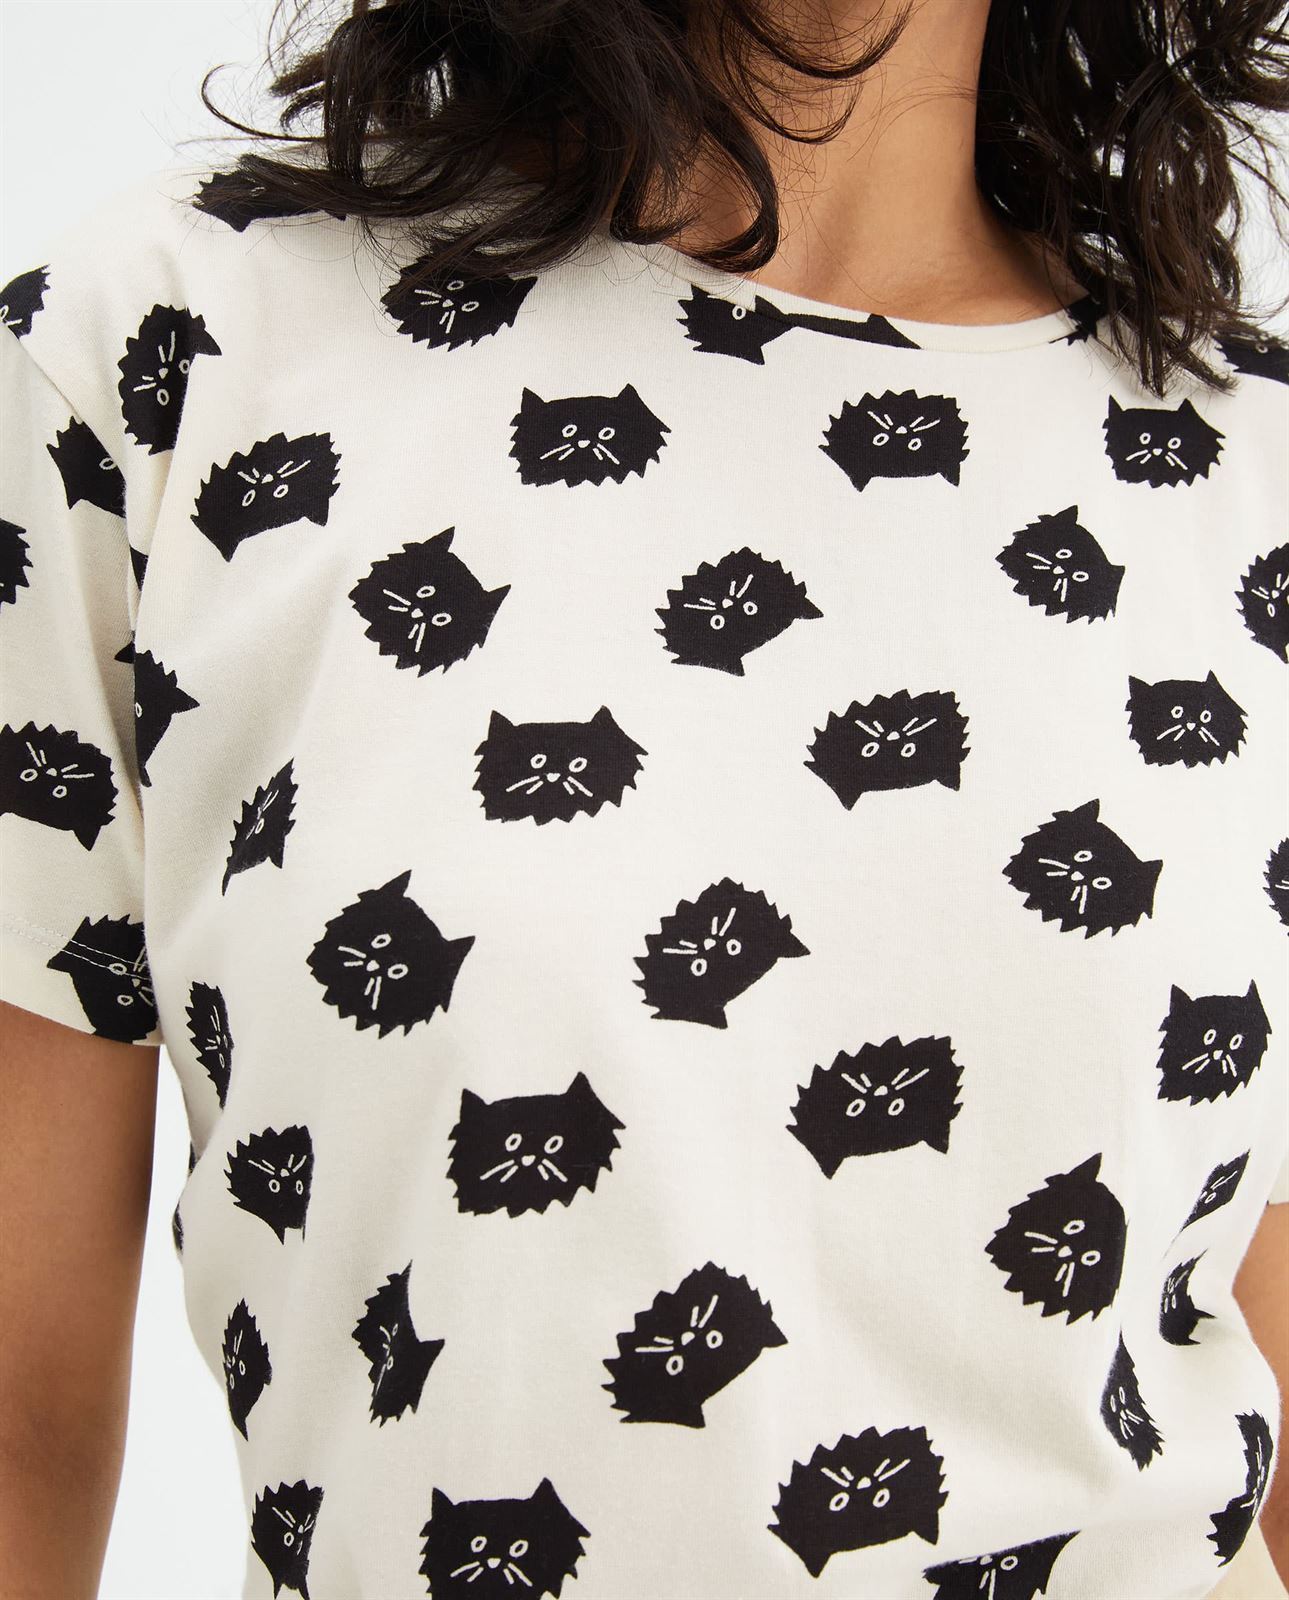 Compañía Fantástica_ Camiseta algodón estampado gatos - Imagen 3